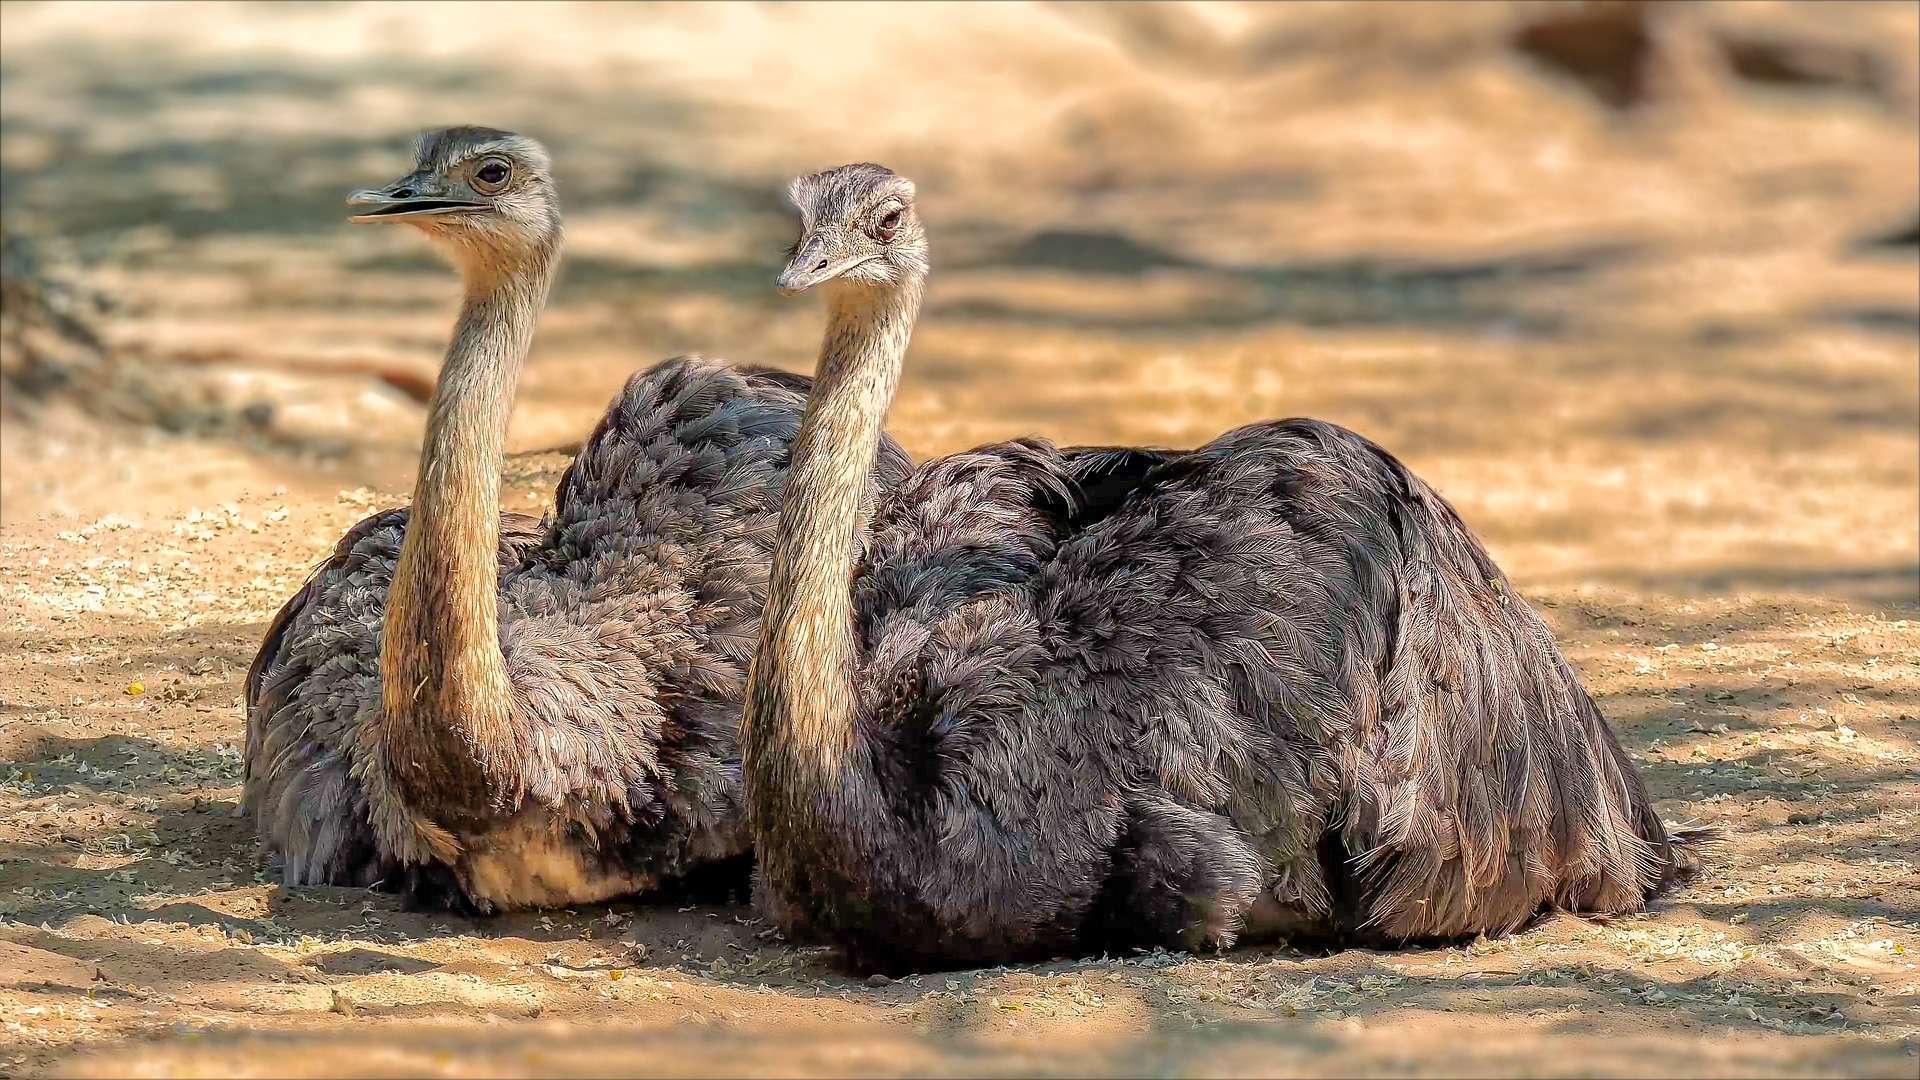 Ostrich Image - MasaiMaraSafari.in